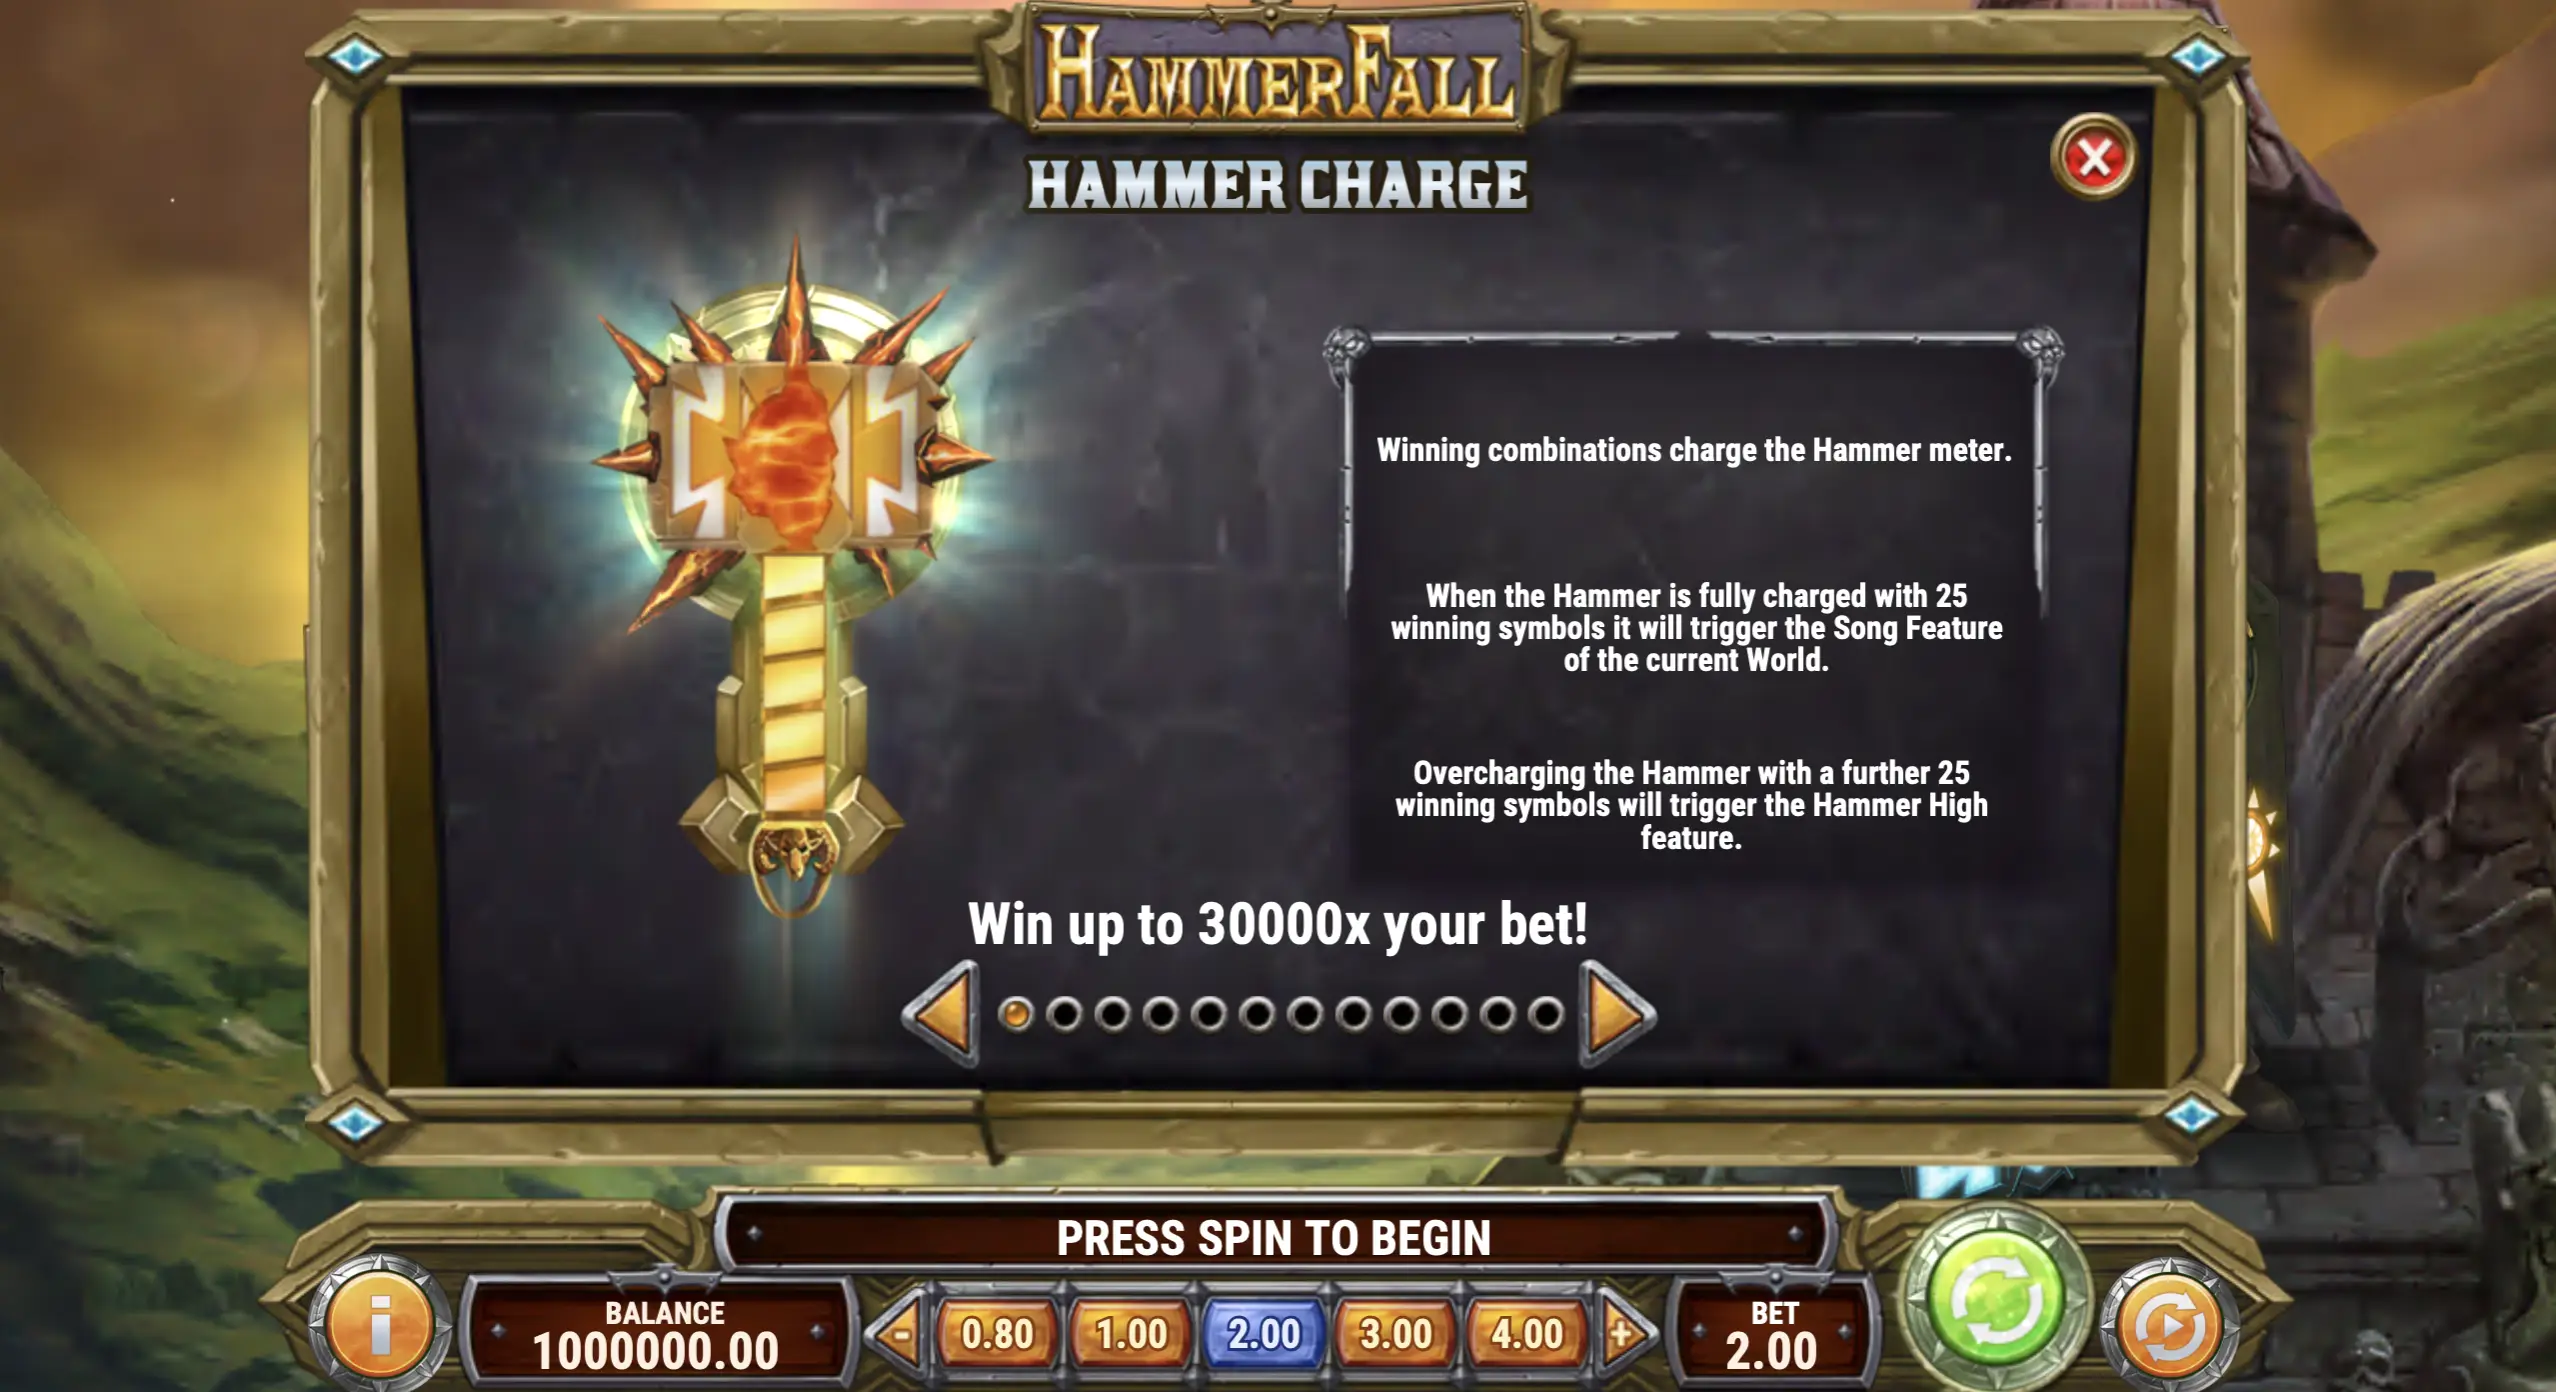 HammerFall Hammer Charge